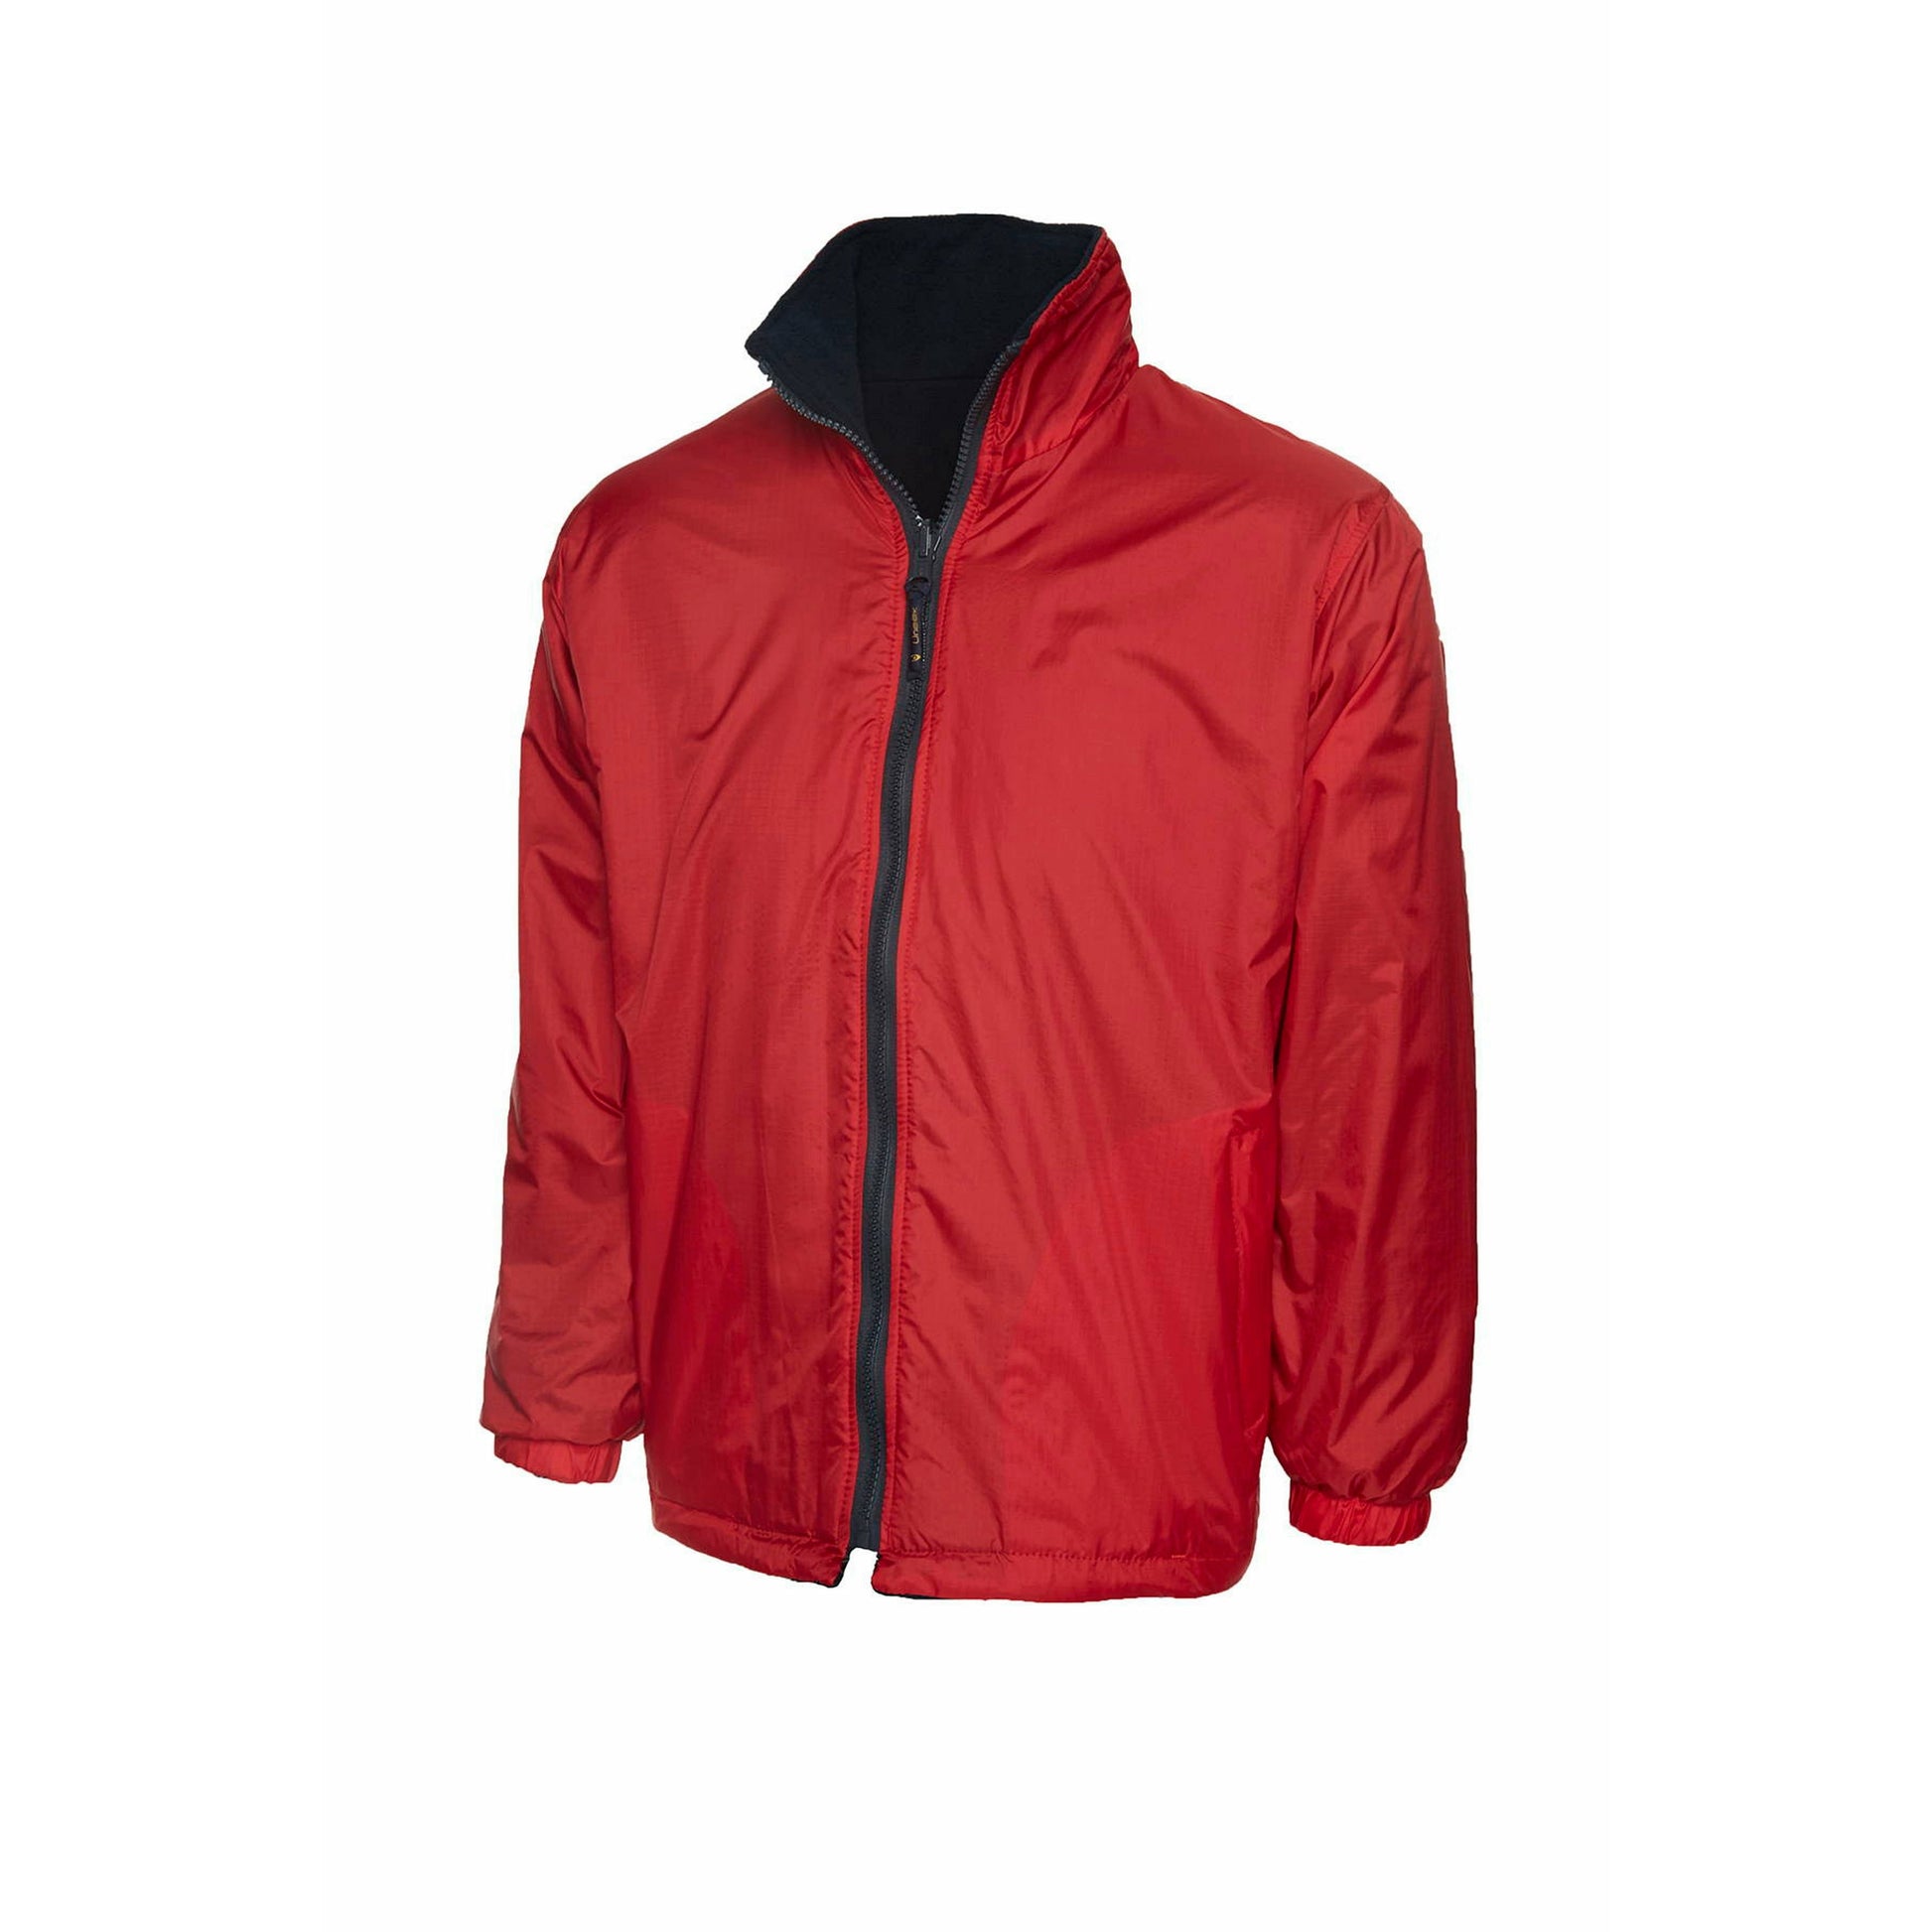 Childrens Reversible Fleece Jacket Red